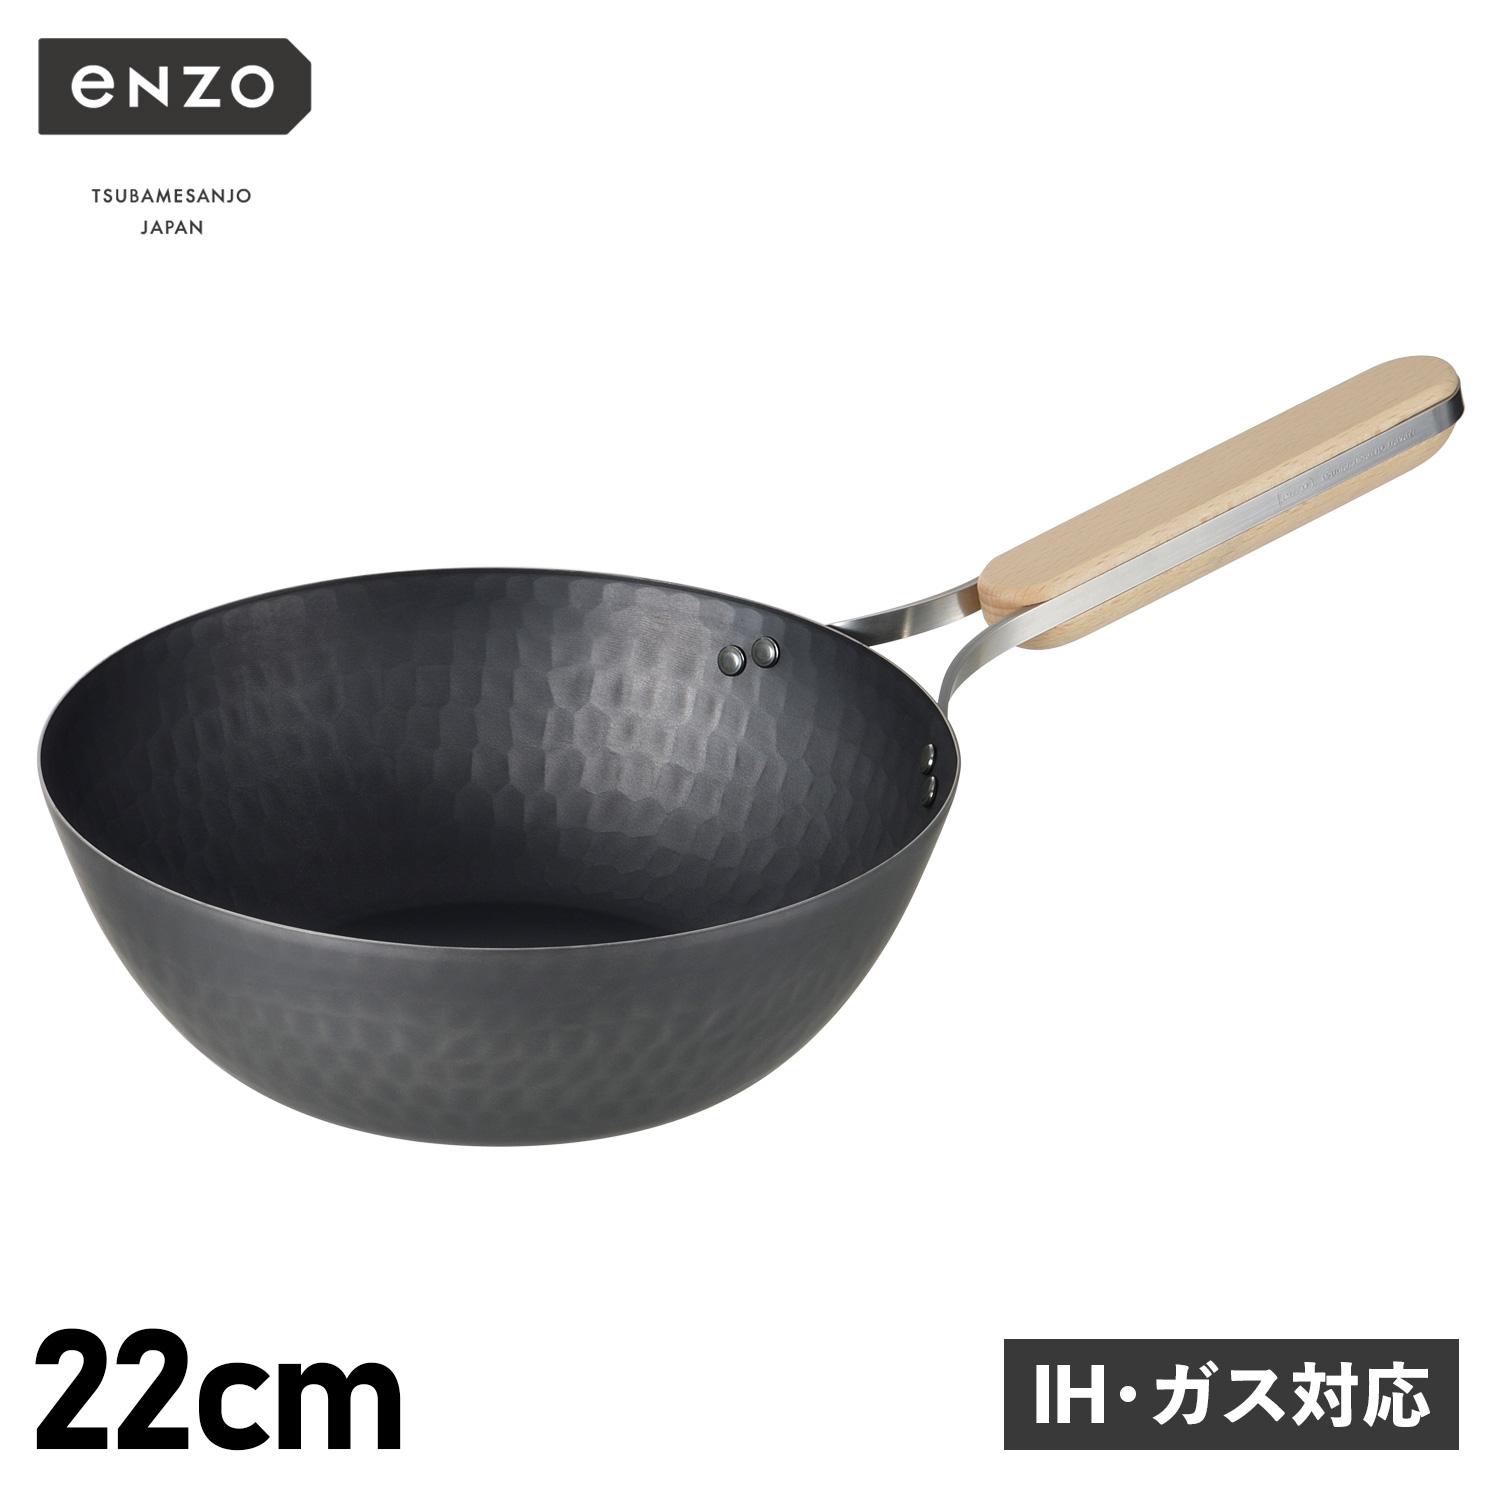 enzo エンゾウ 中華鍋 フライパン 22cm IH ガス対応 鉄 IRON WOK en-011